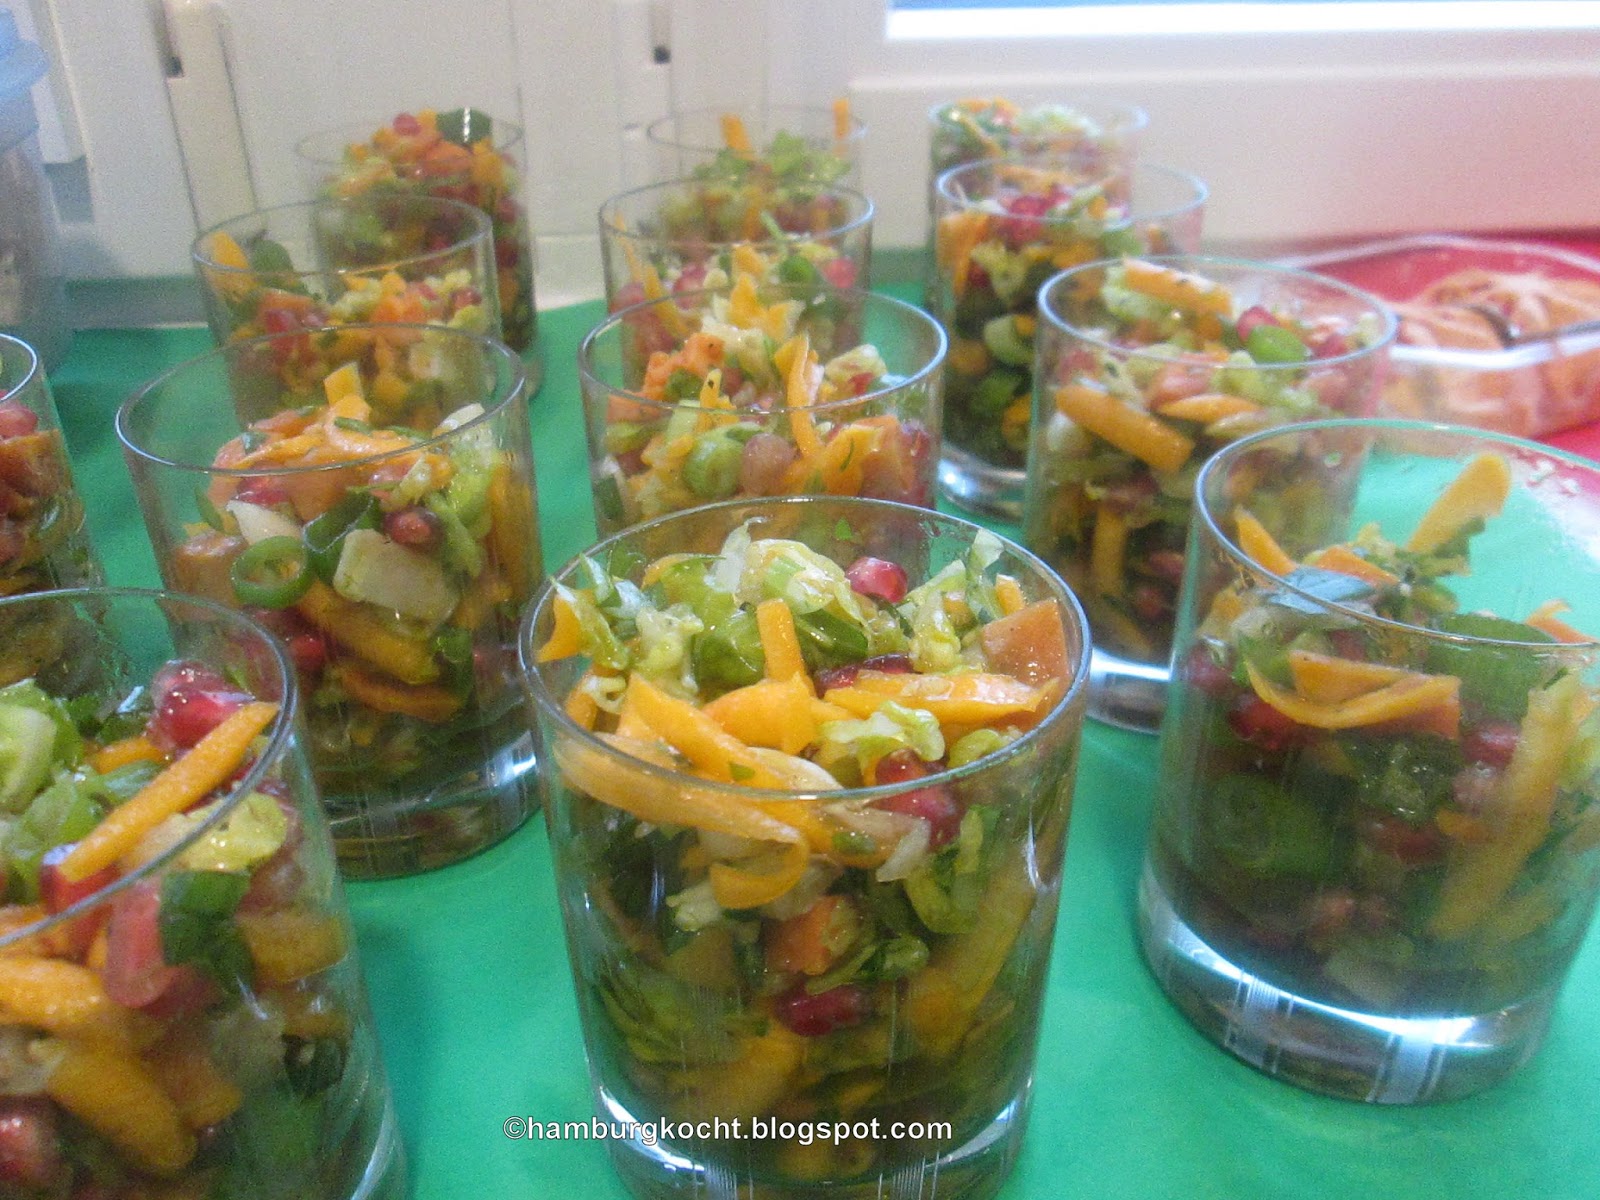 Hamburg kocht!: Herbst-Salat oder Winter-Salat in fröhlichen Herbstfarben